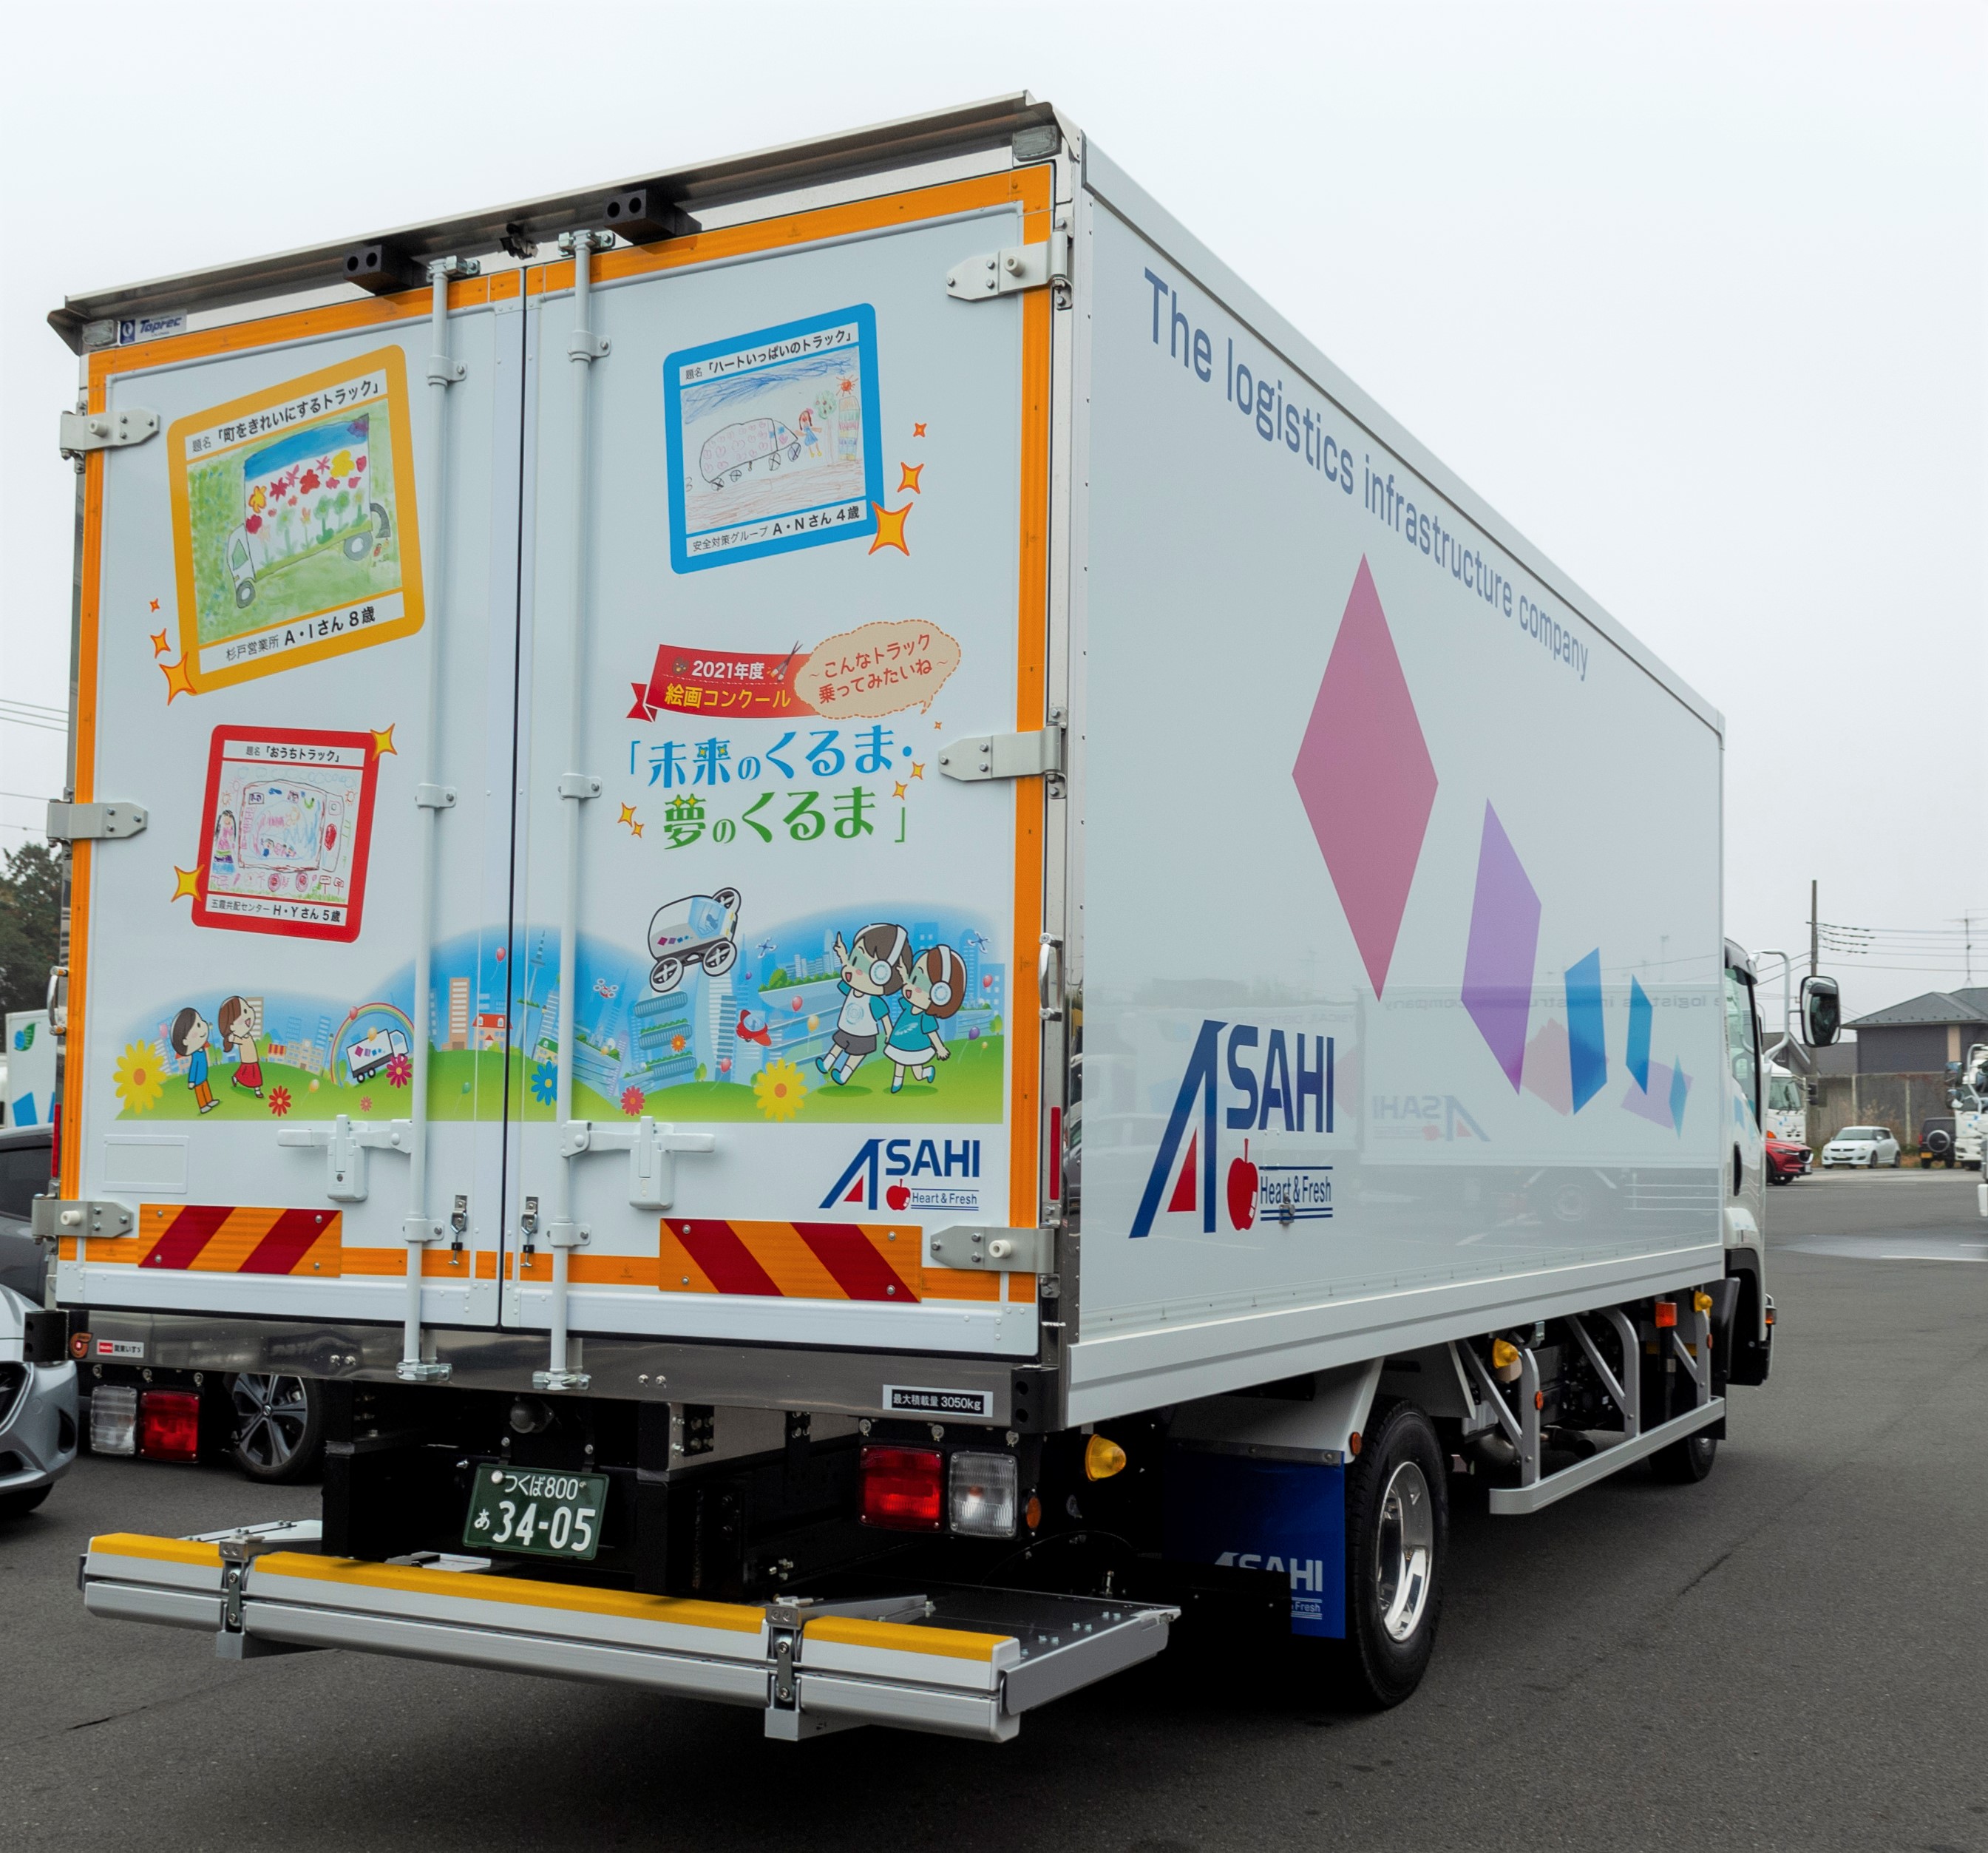 子どもたちの絵画を描いたラッピング車両が11月22日に納車されました アサヒロジスティクス株式会社のプレスリリース